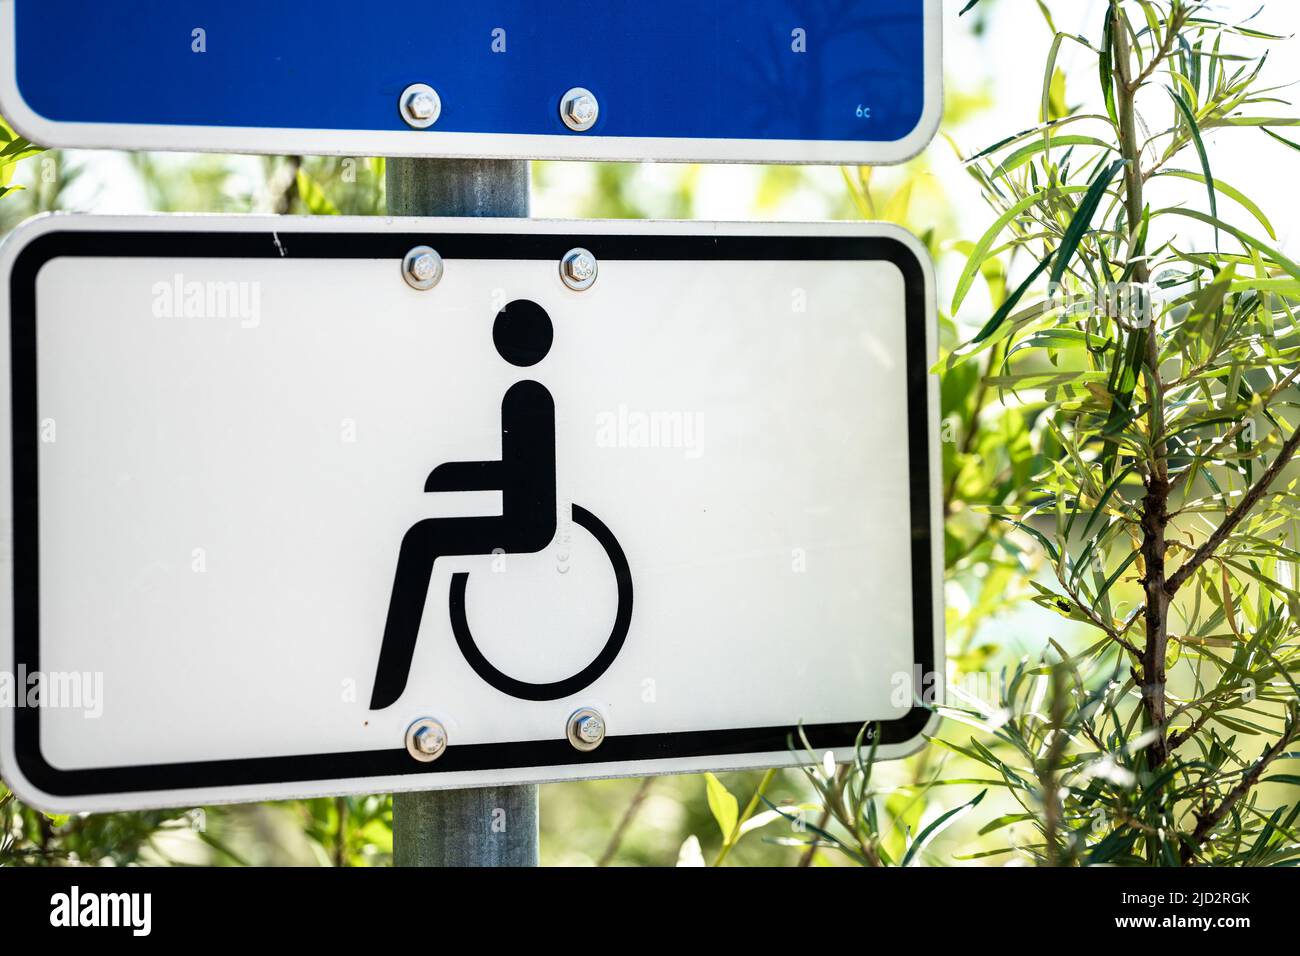 Behindertenparkplatz, Schild Parken Für Menschen Mit Behinderung Stock Photo